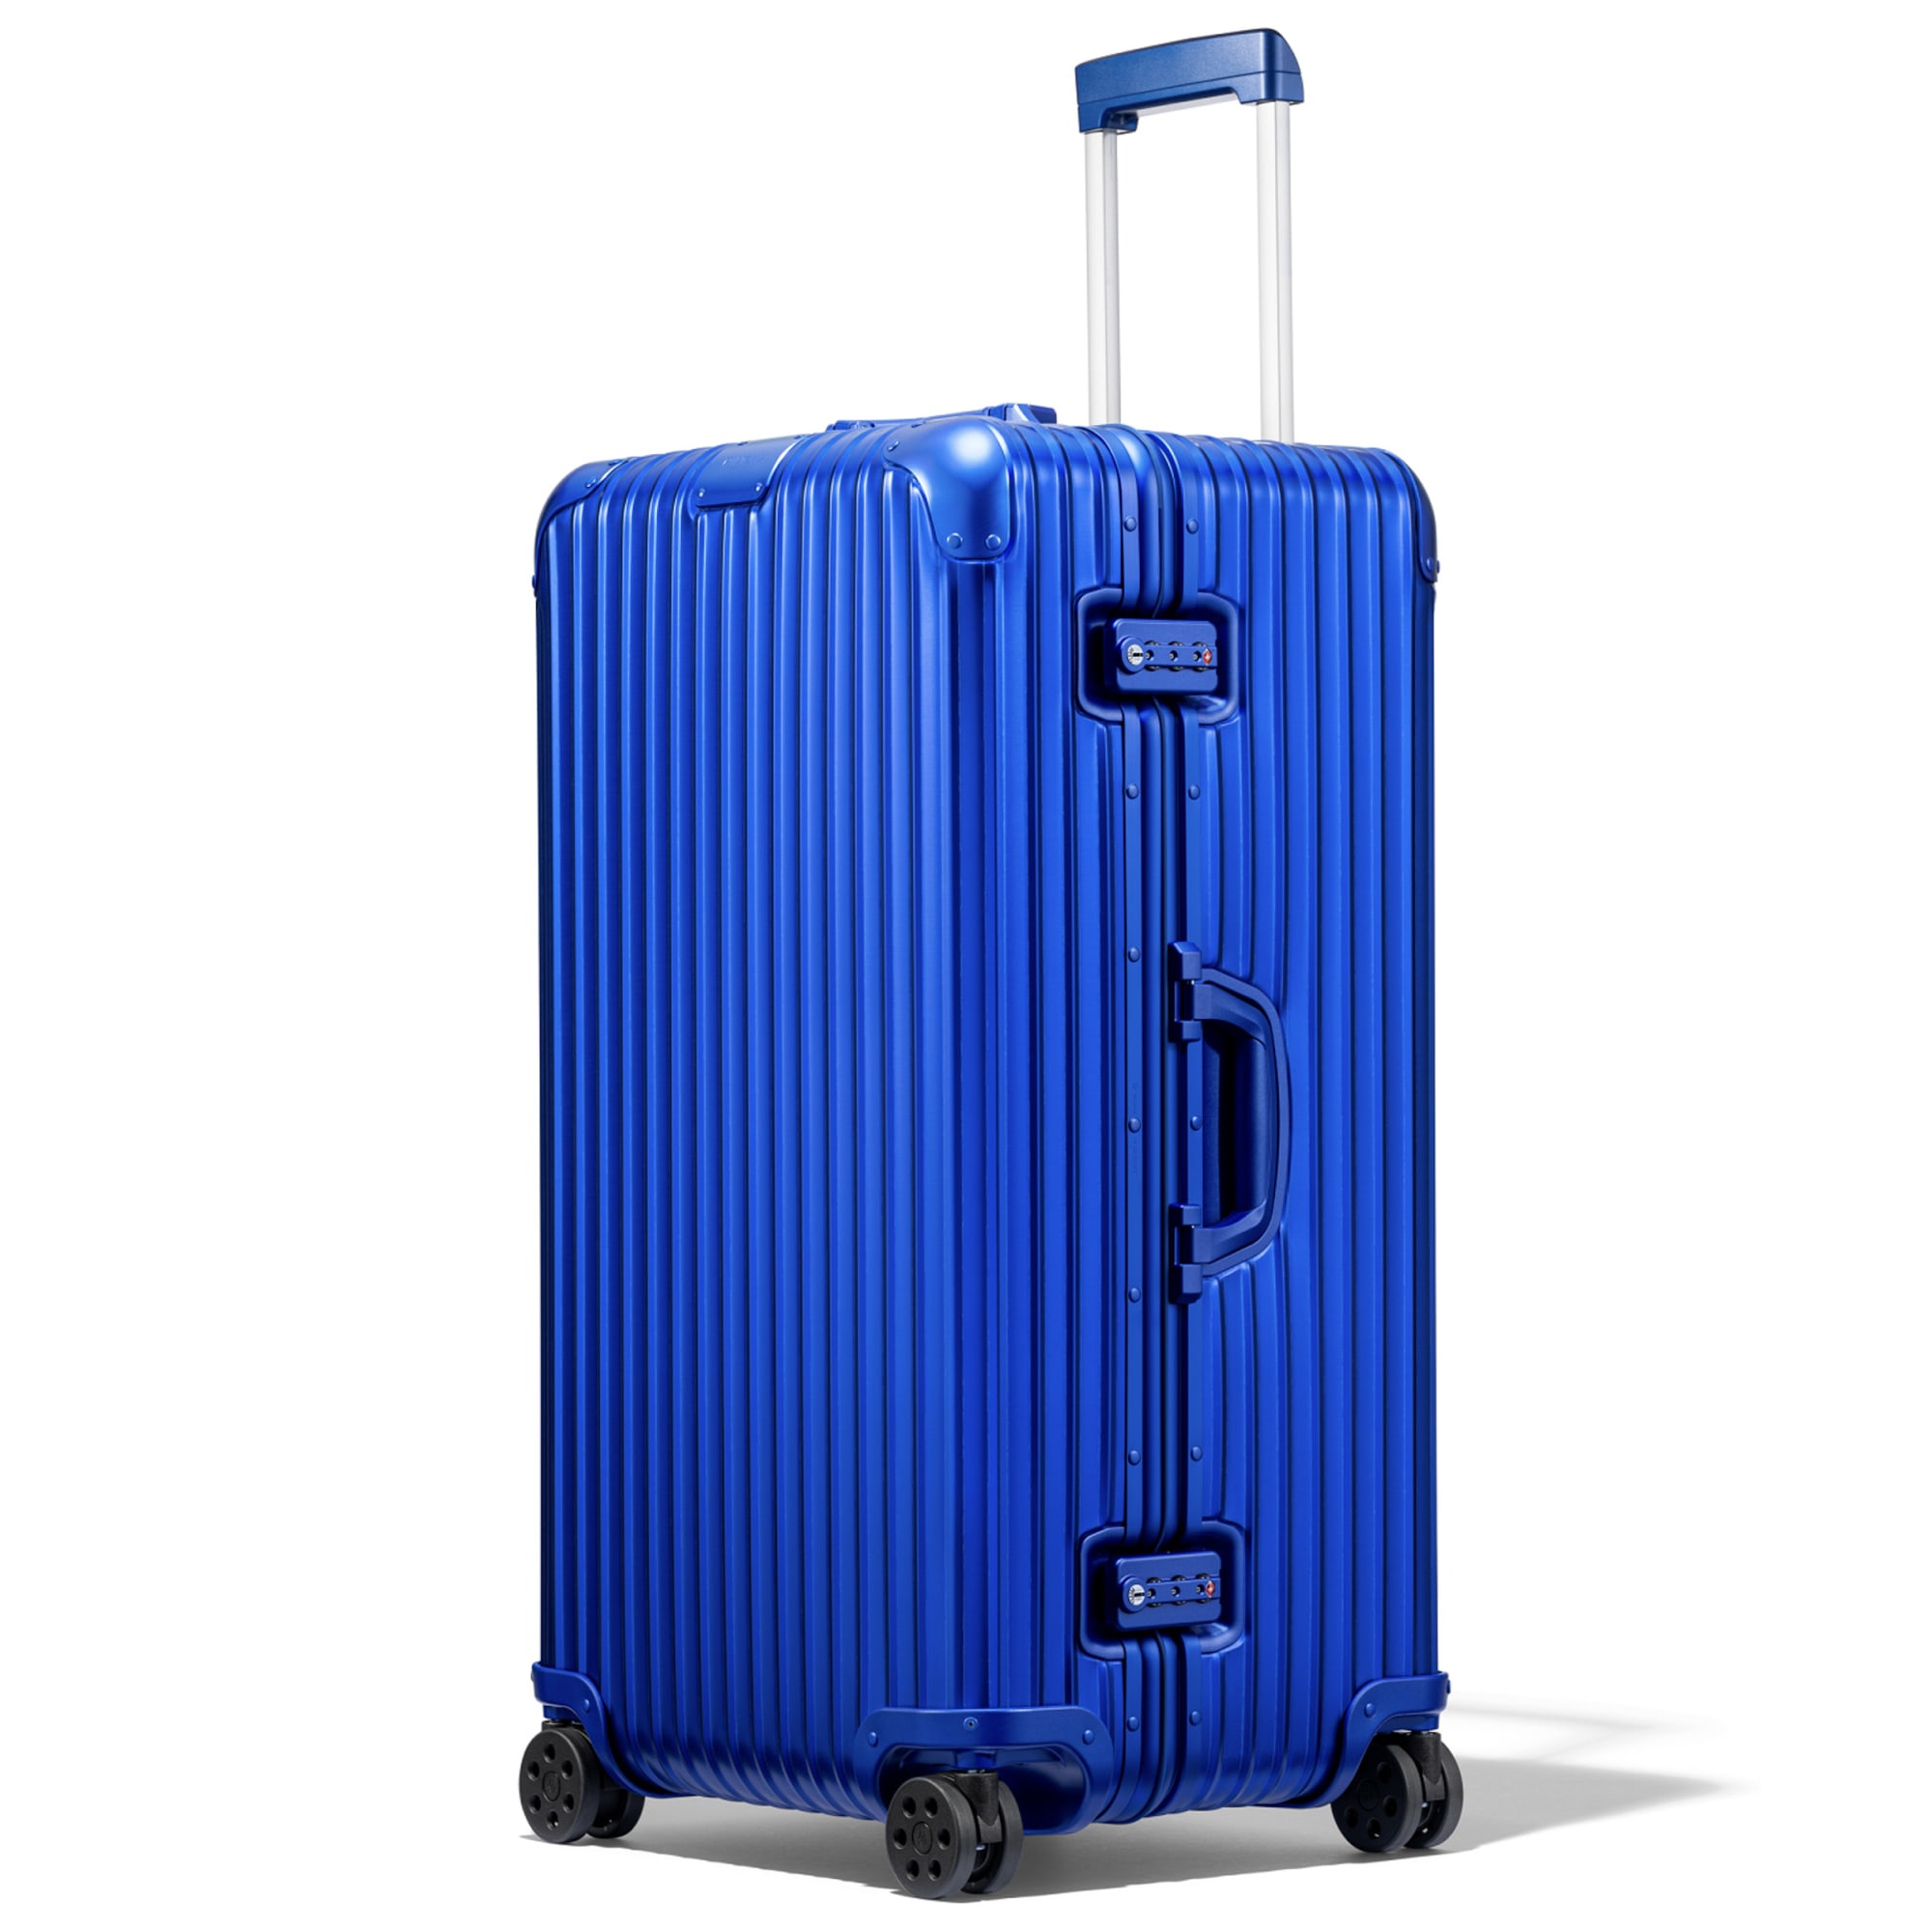 「リモワ」のアルミニウム合金製スーツケースに地中海やトキに 